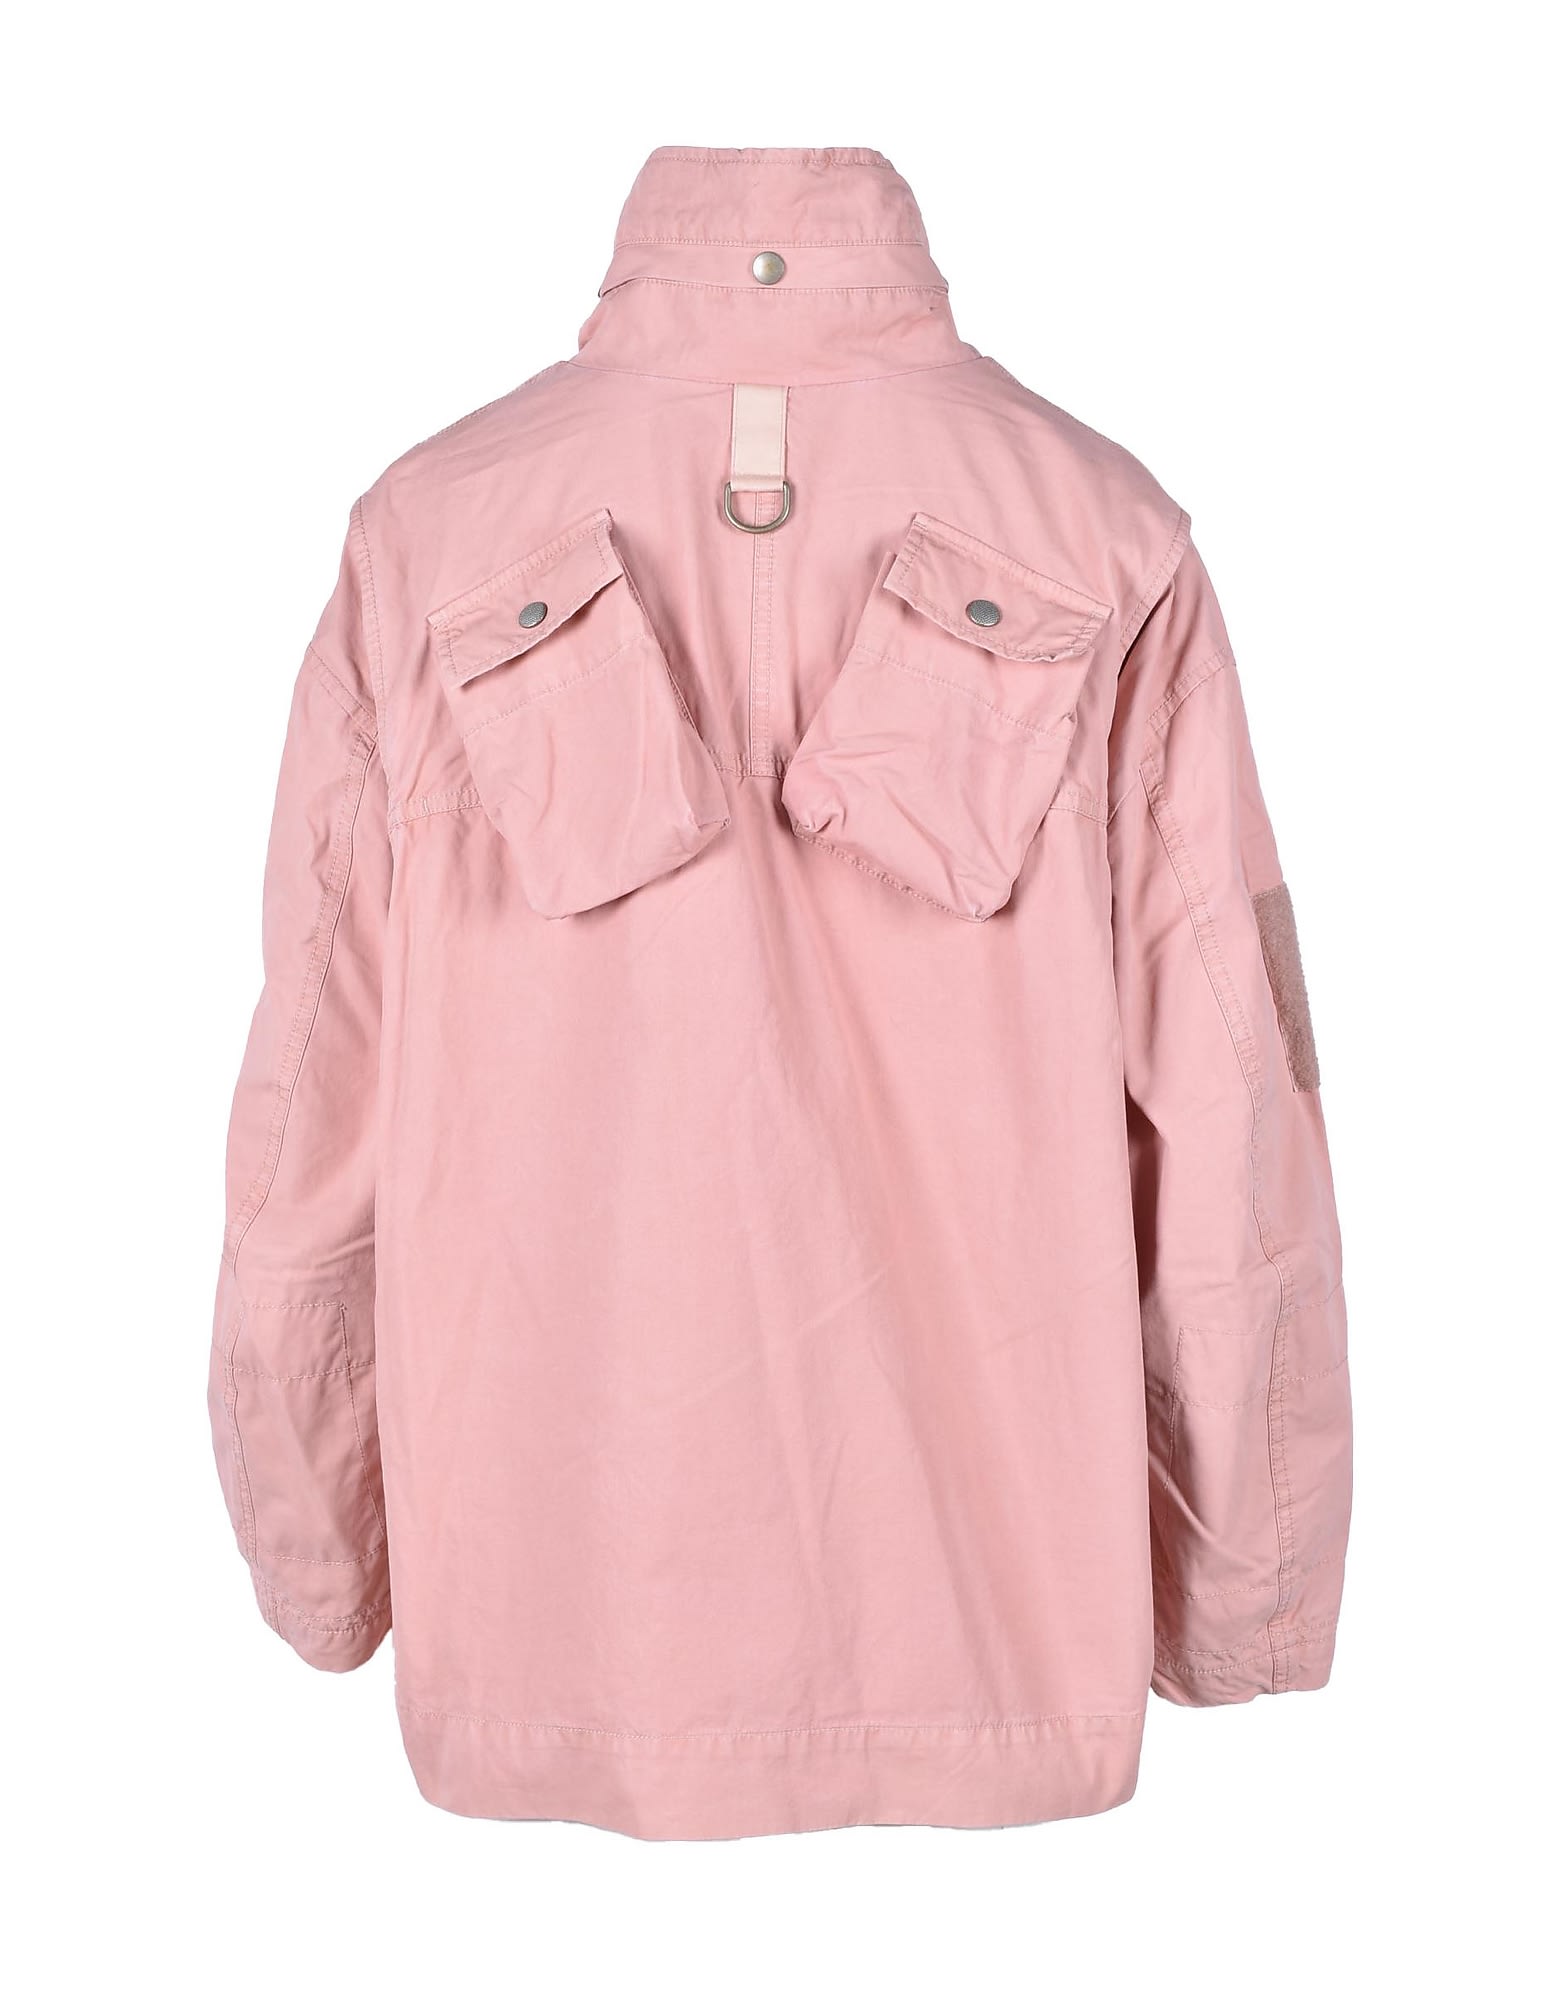 Diesel Womens Pink Jacket